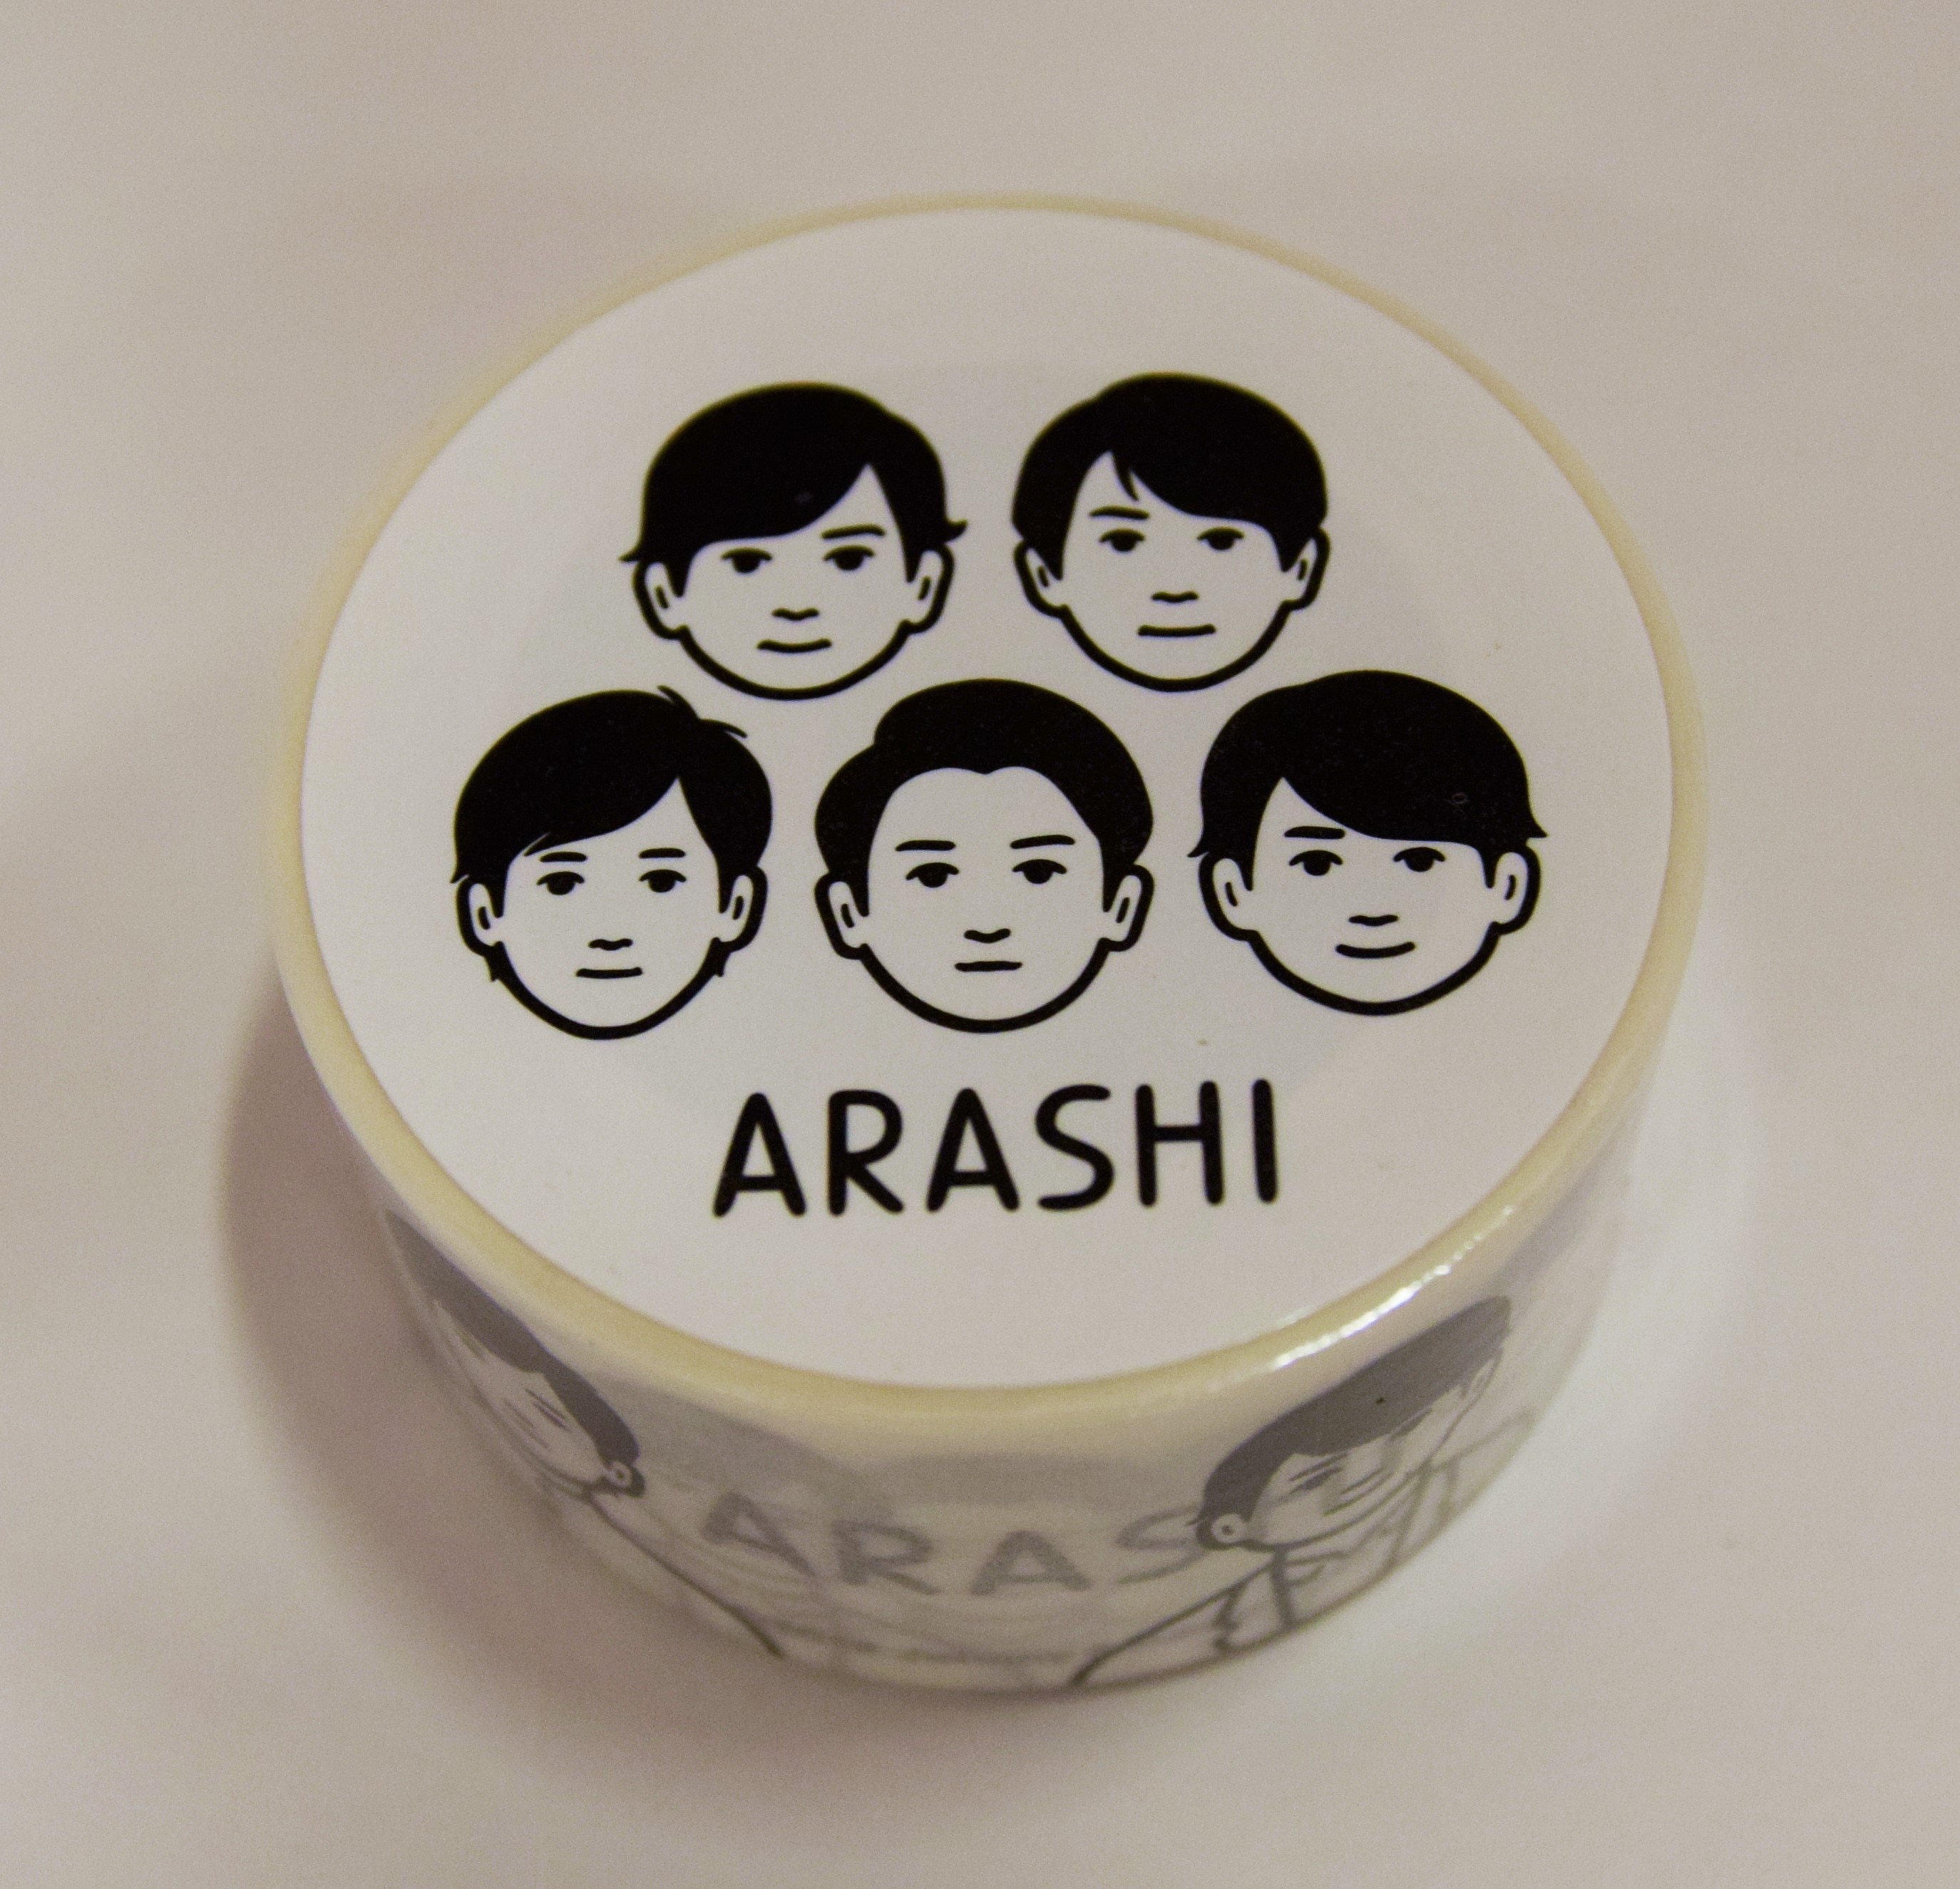 嵐 19年 嵐を旅する展覧会 Arashi Exhibition Journey マスキングテープ まんだらけ Mandarake